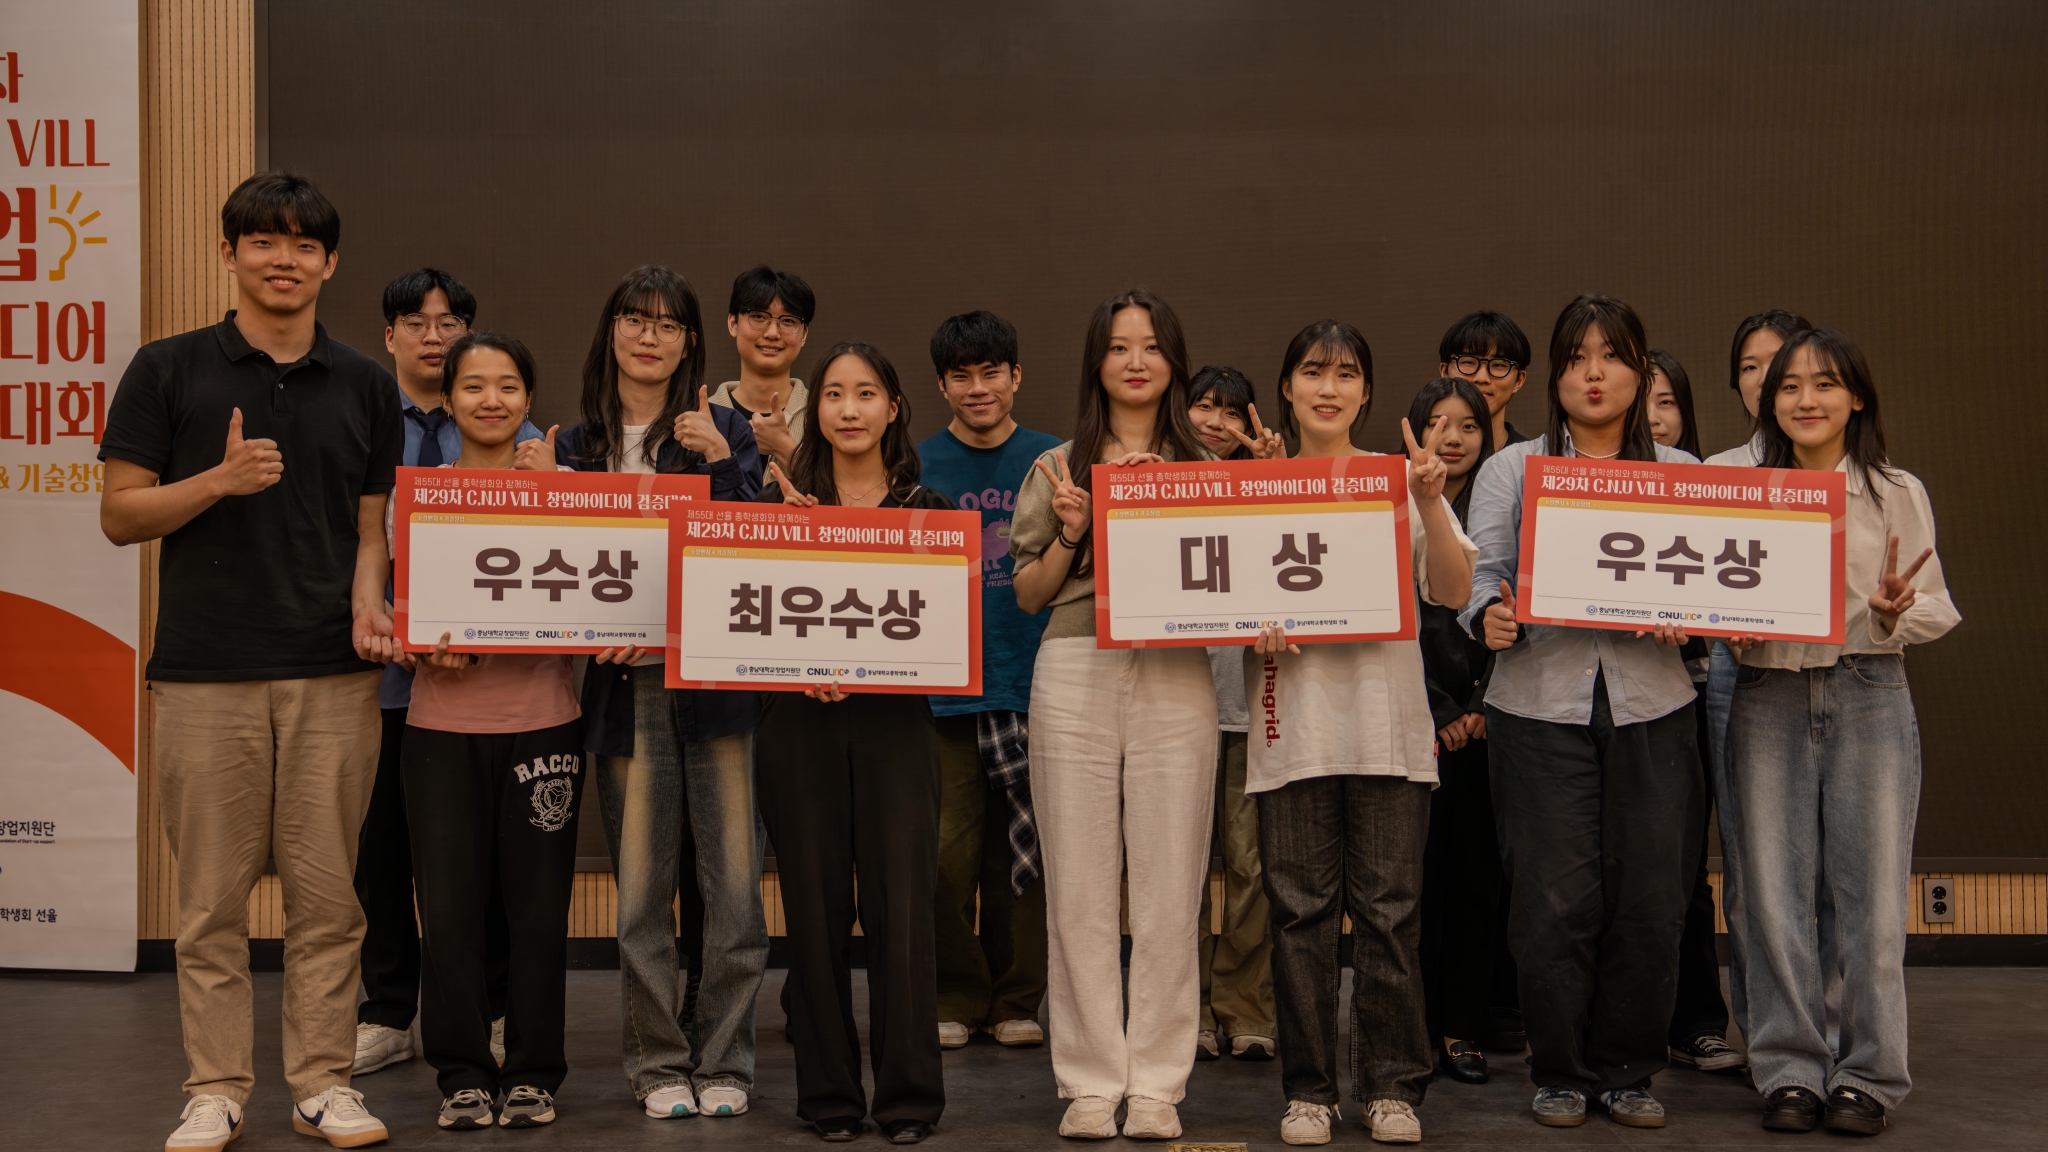 창업지원단-총학생회, ‘제29차 C.N.U VILL 창업아이디어 검증대회’ 개최 사진